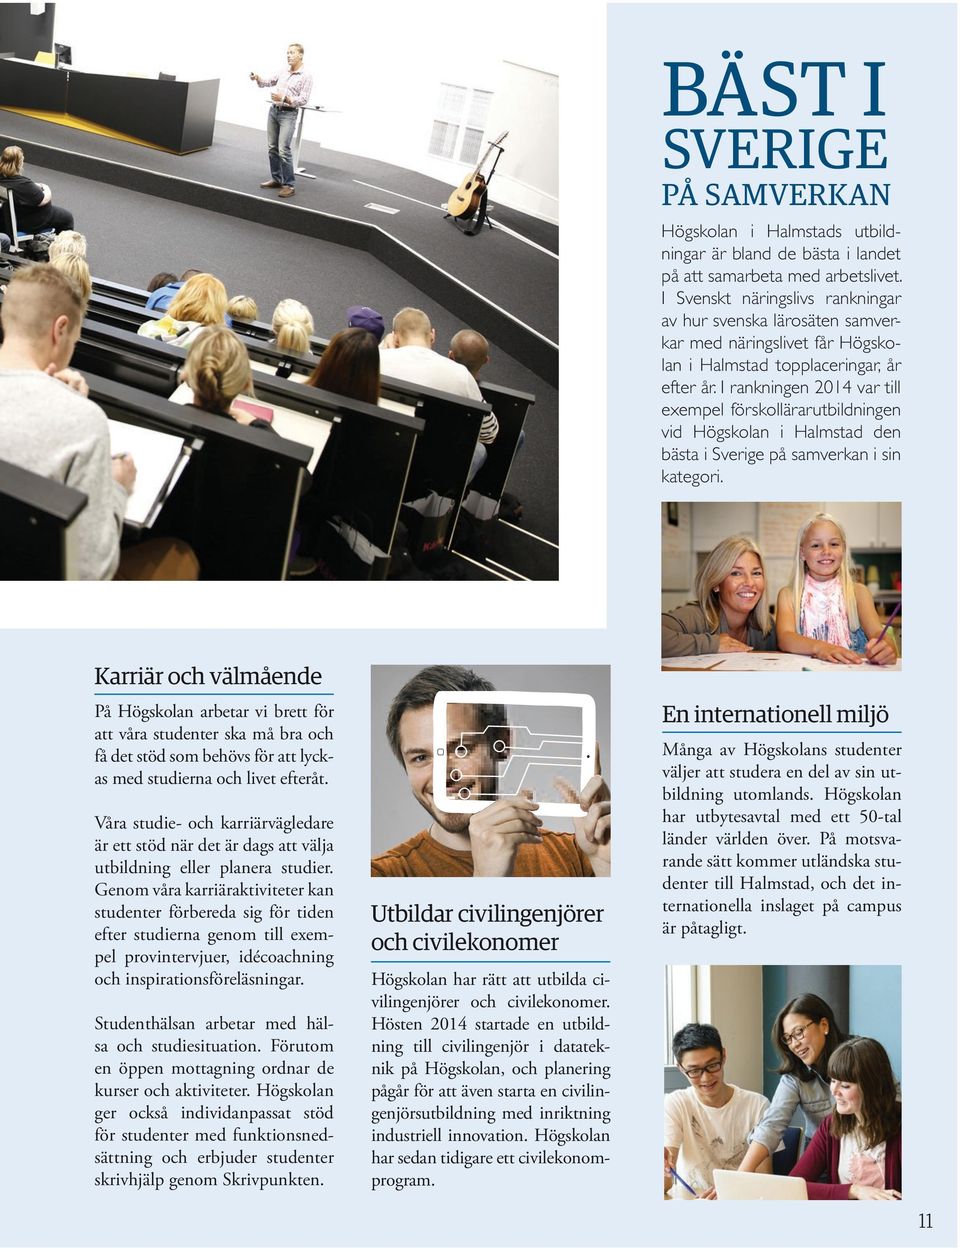 I rankningen 2014 var till exempel förskollärarutbildningen vid Högskolan i Halmstad den bästa i Sverige på samverkan i sin kategori.